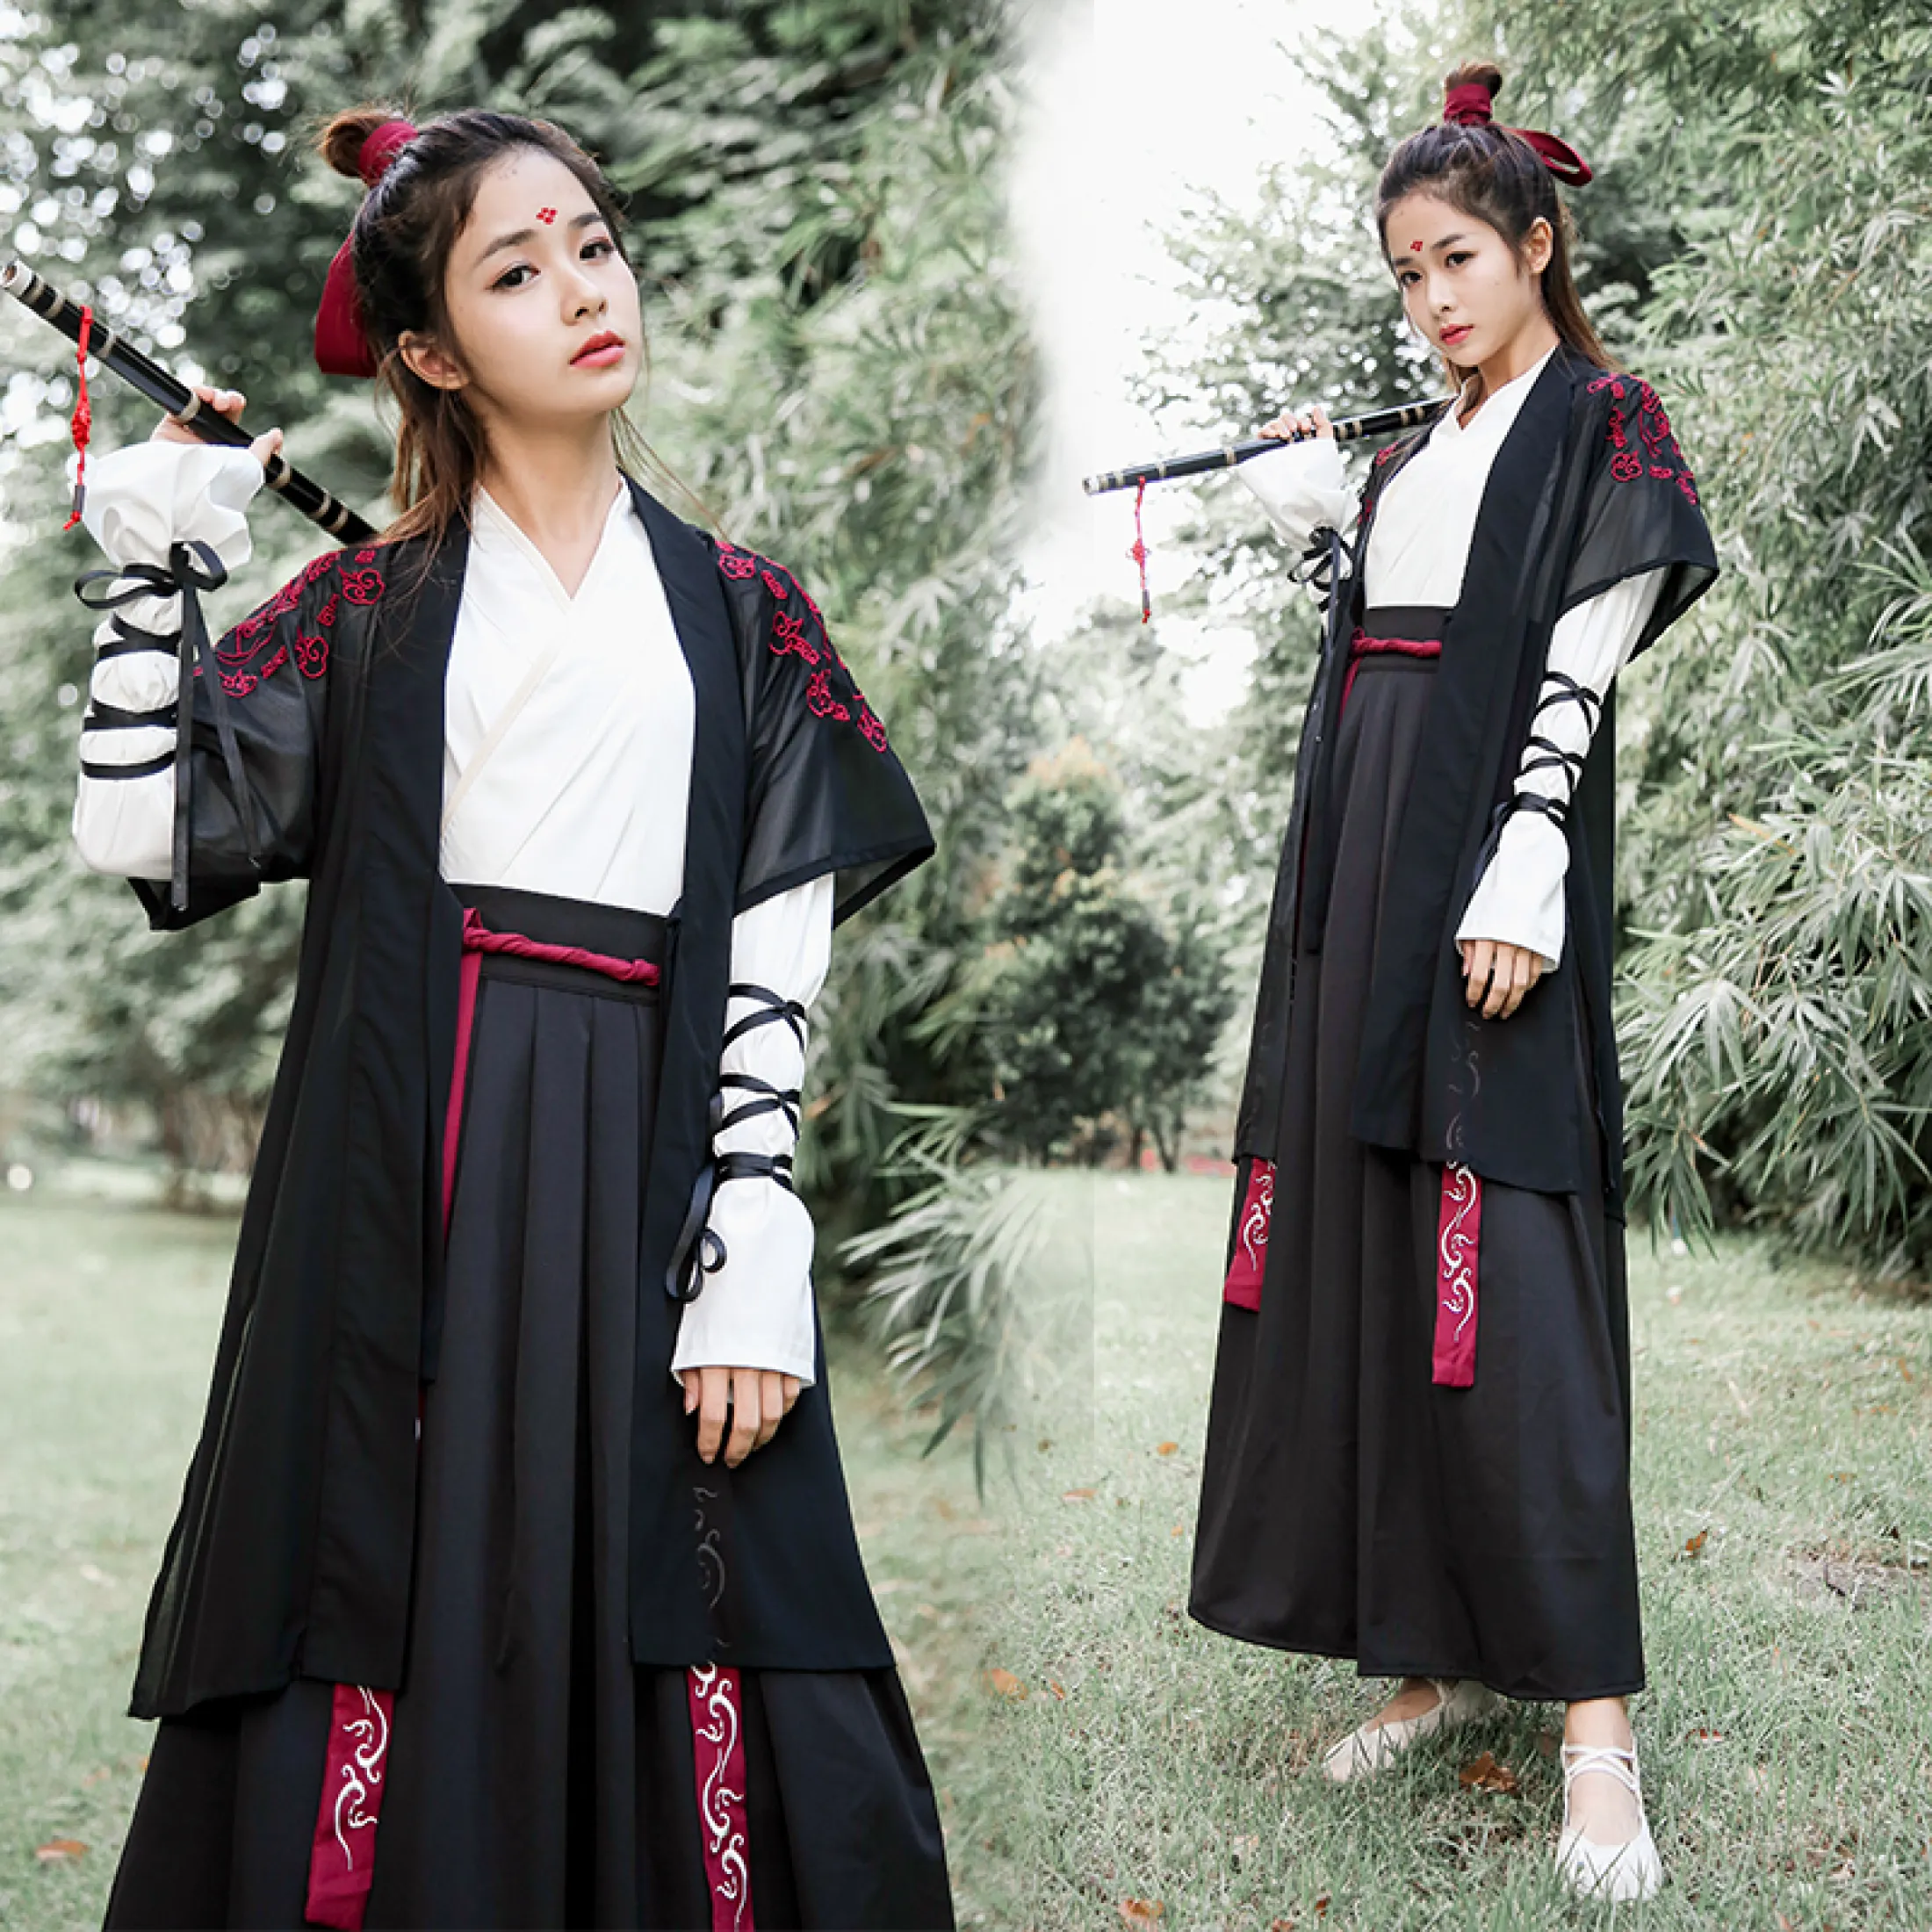 женская одежда в древнем китае